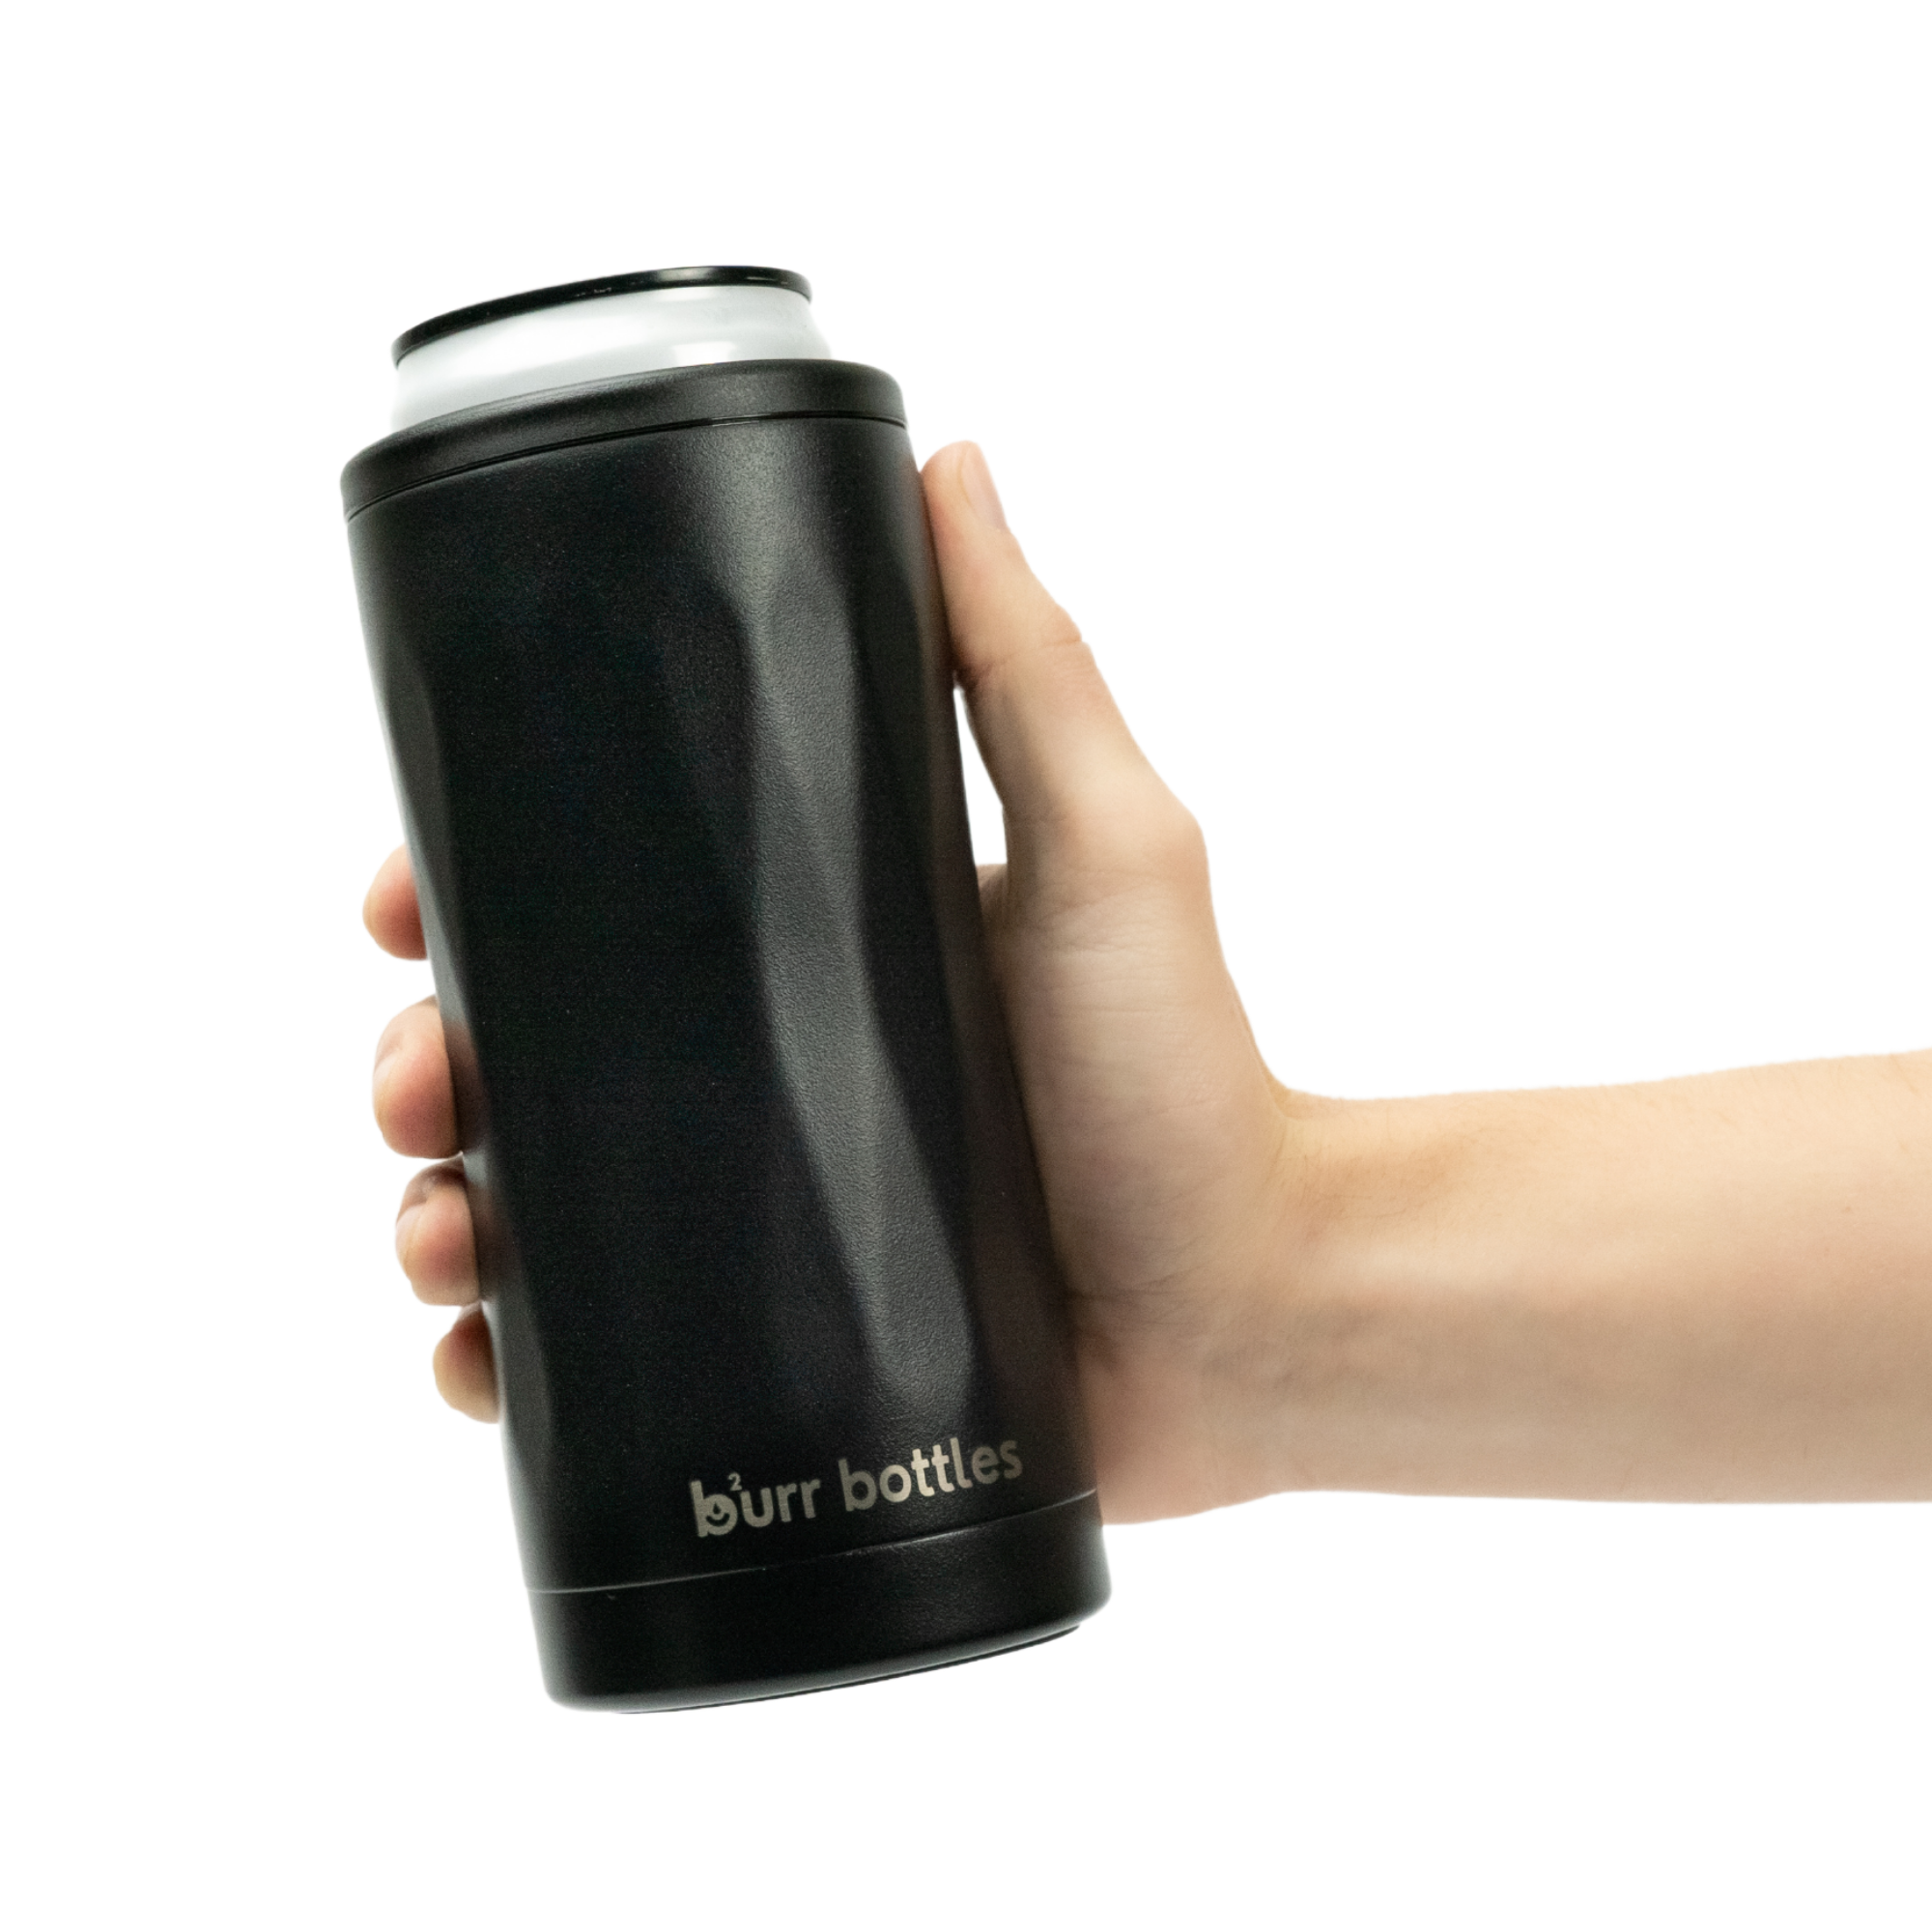 Metallic Can Cooler – Burr Bottles